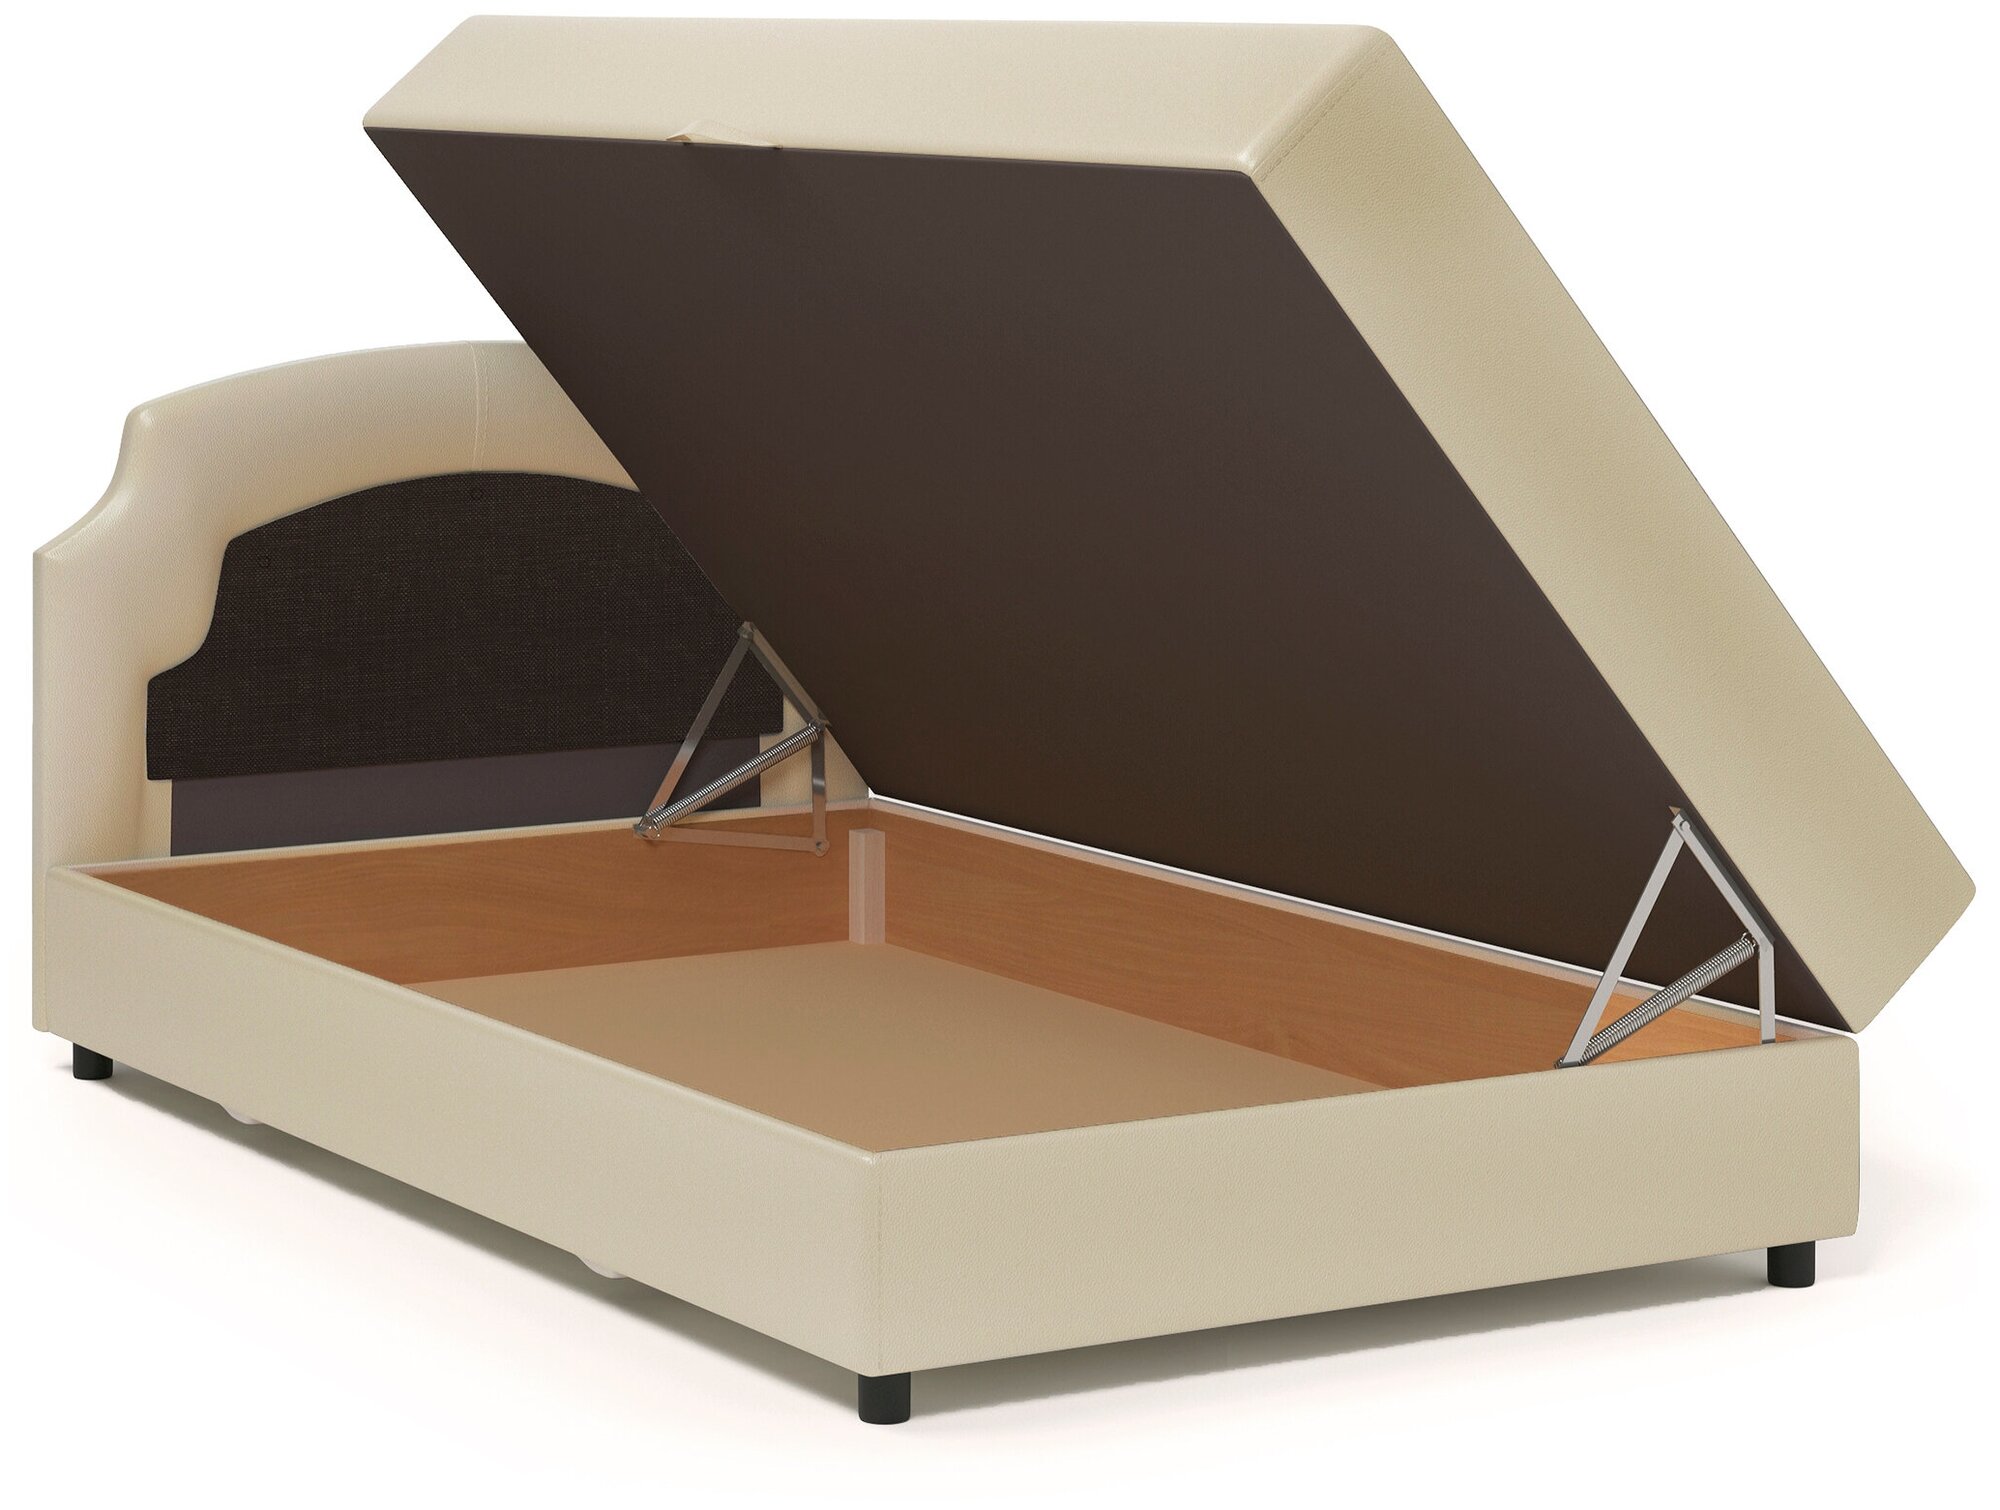 Кровать Шарм-Дизайн Шарм 140 рогожка шоколад и экокожа беж